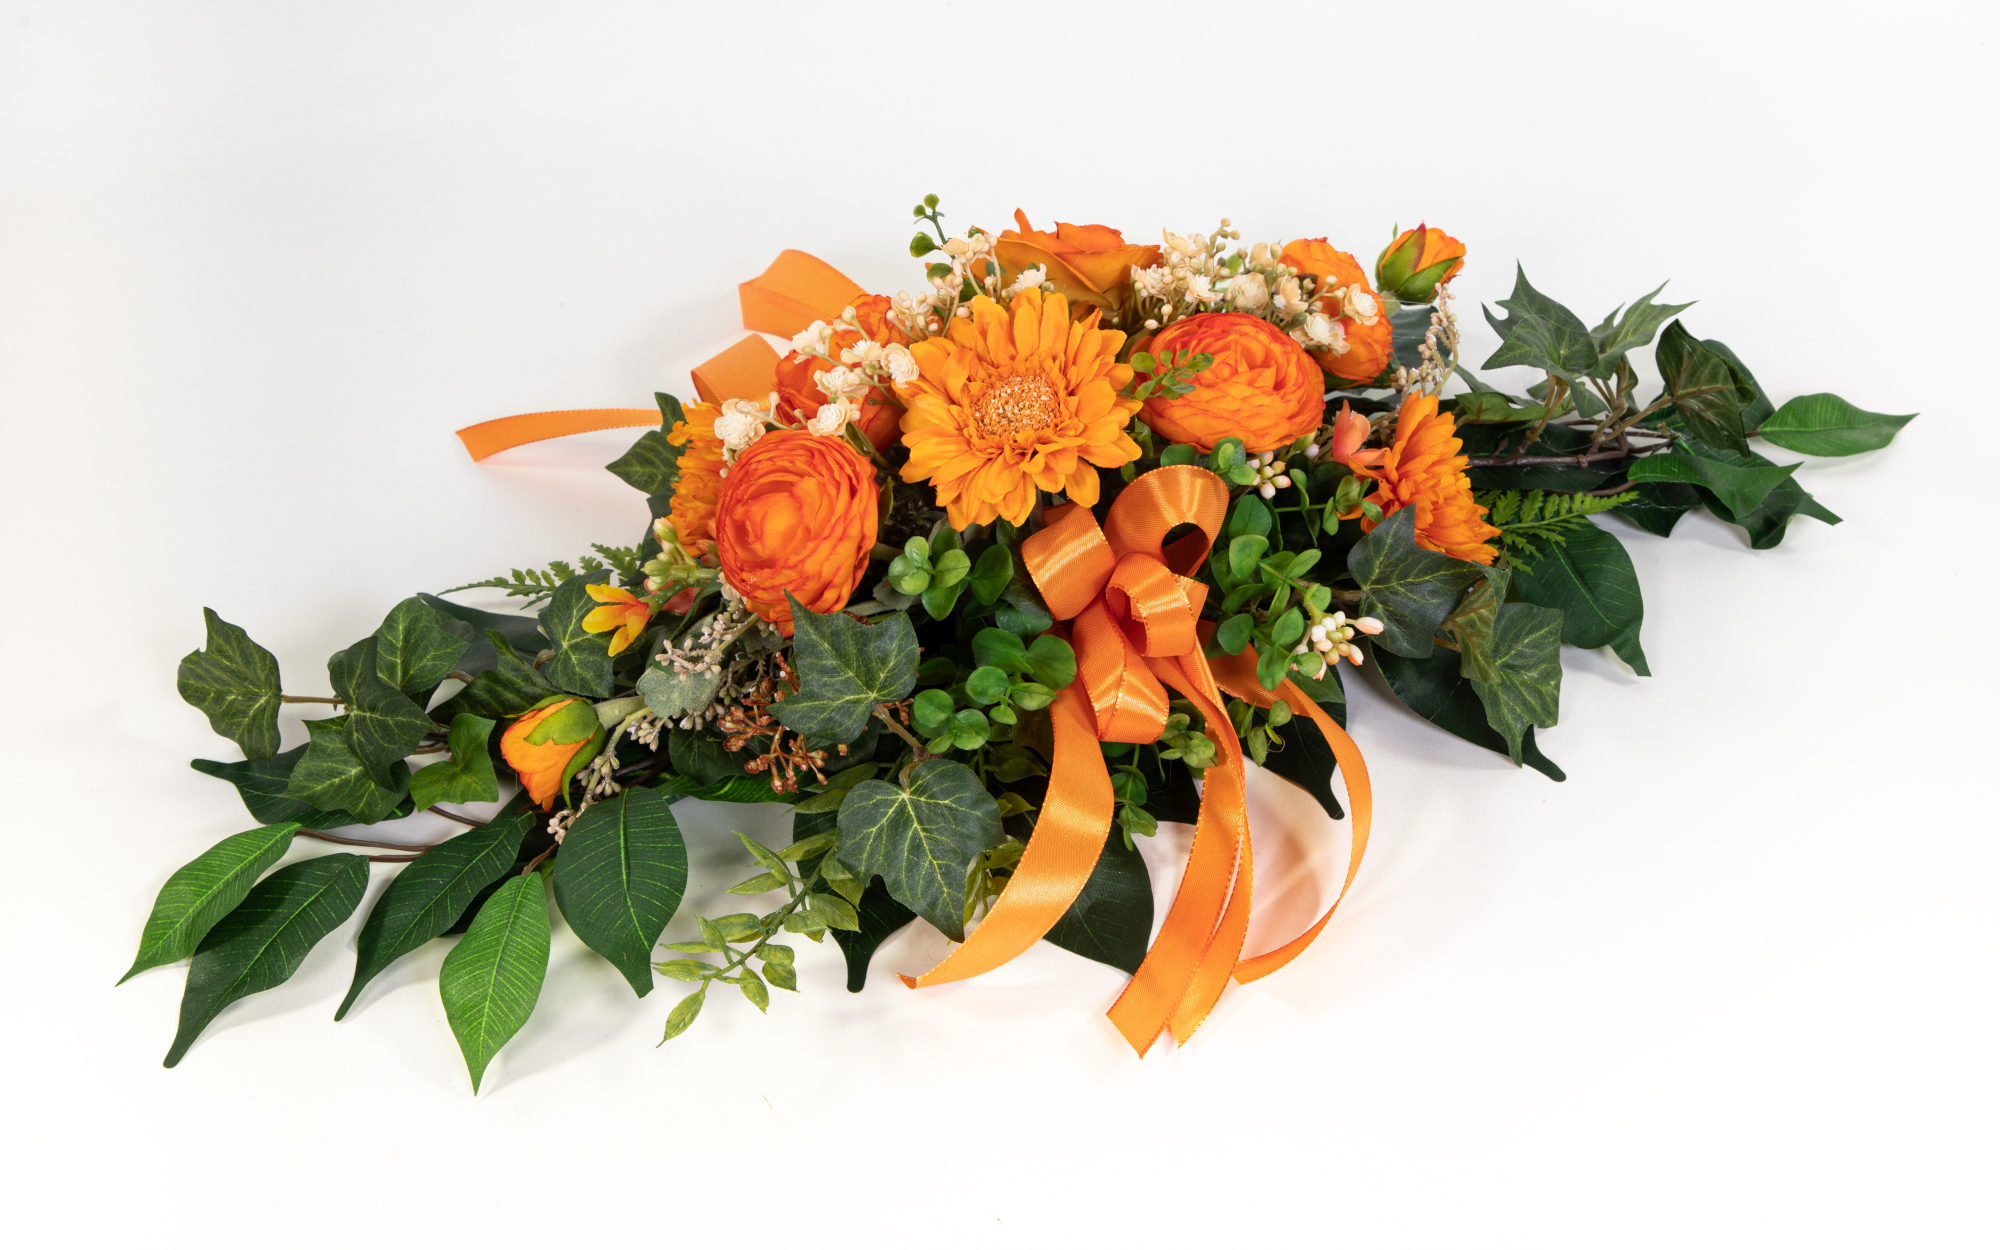 Tischgesteck länglich 60cm orange mit Gerbera Ranunkel und Chrysantheme Kunstblumen künstliche Blumen